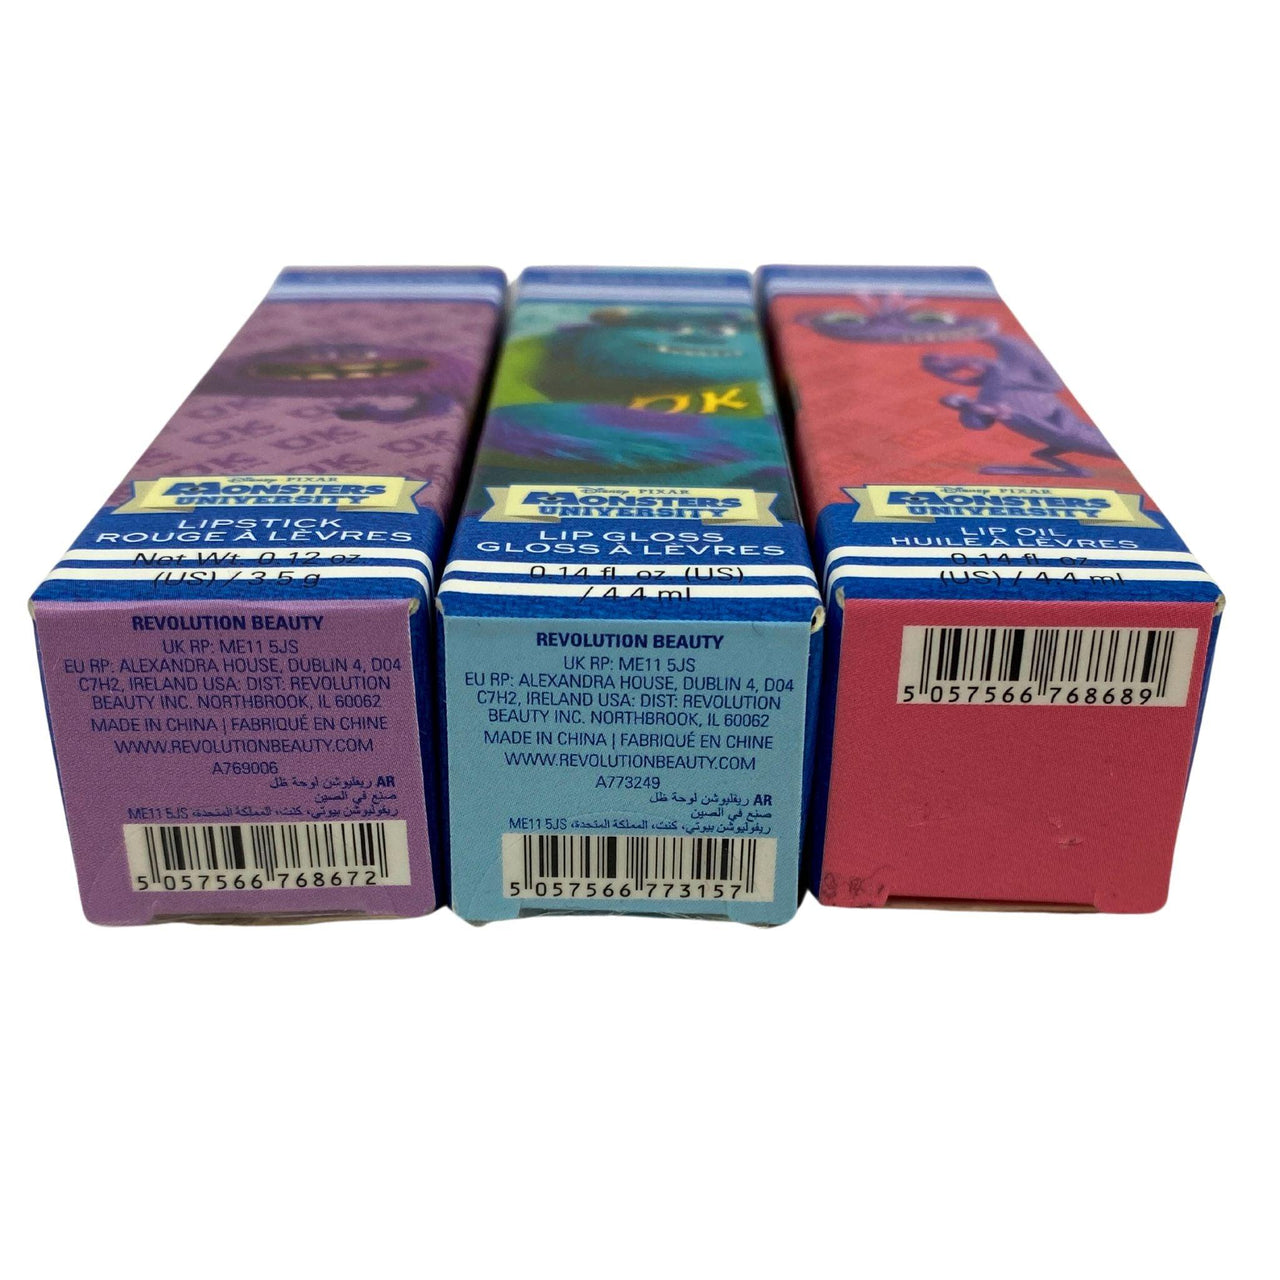 Monsters University Lip Product Mix (50 Pcs Lot) - Discount Wholesalers Inc